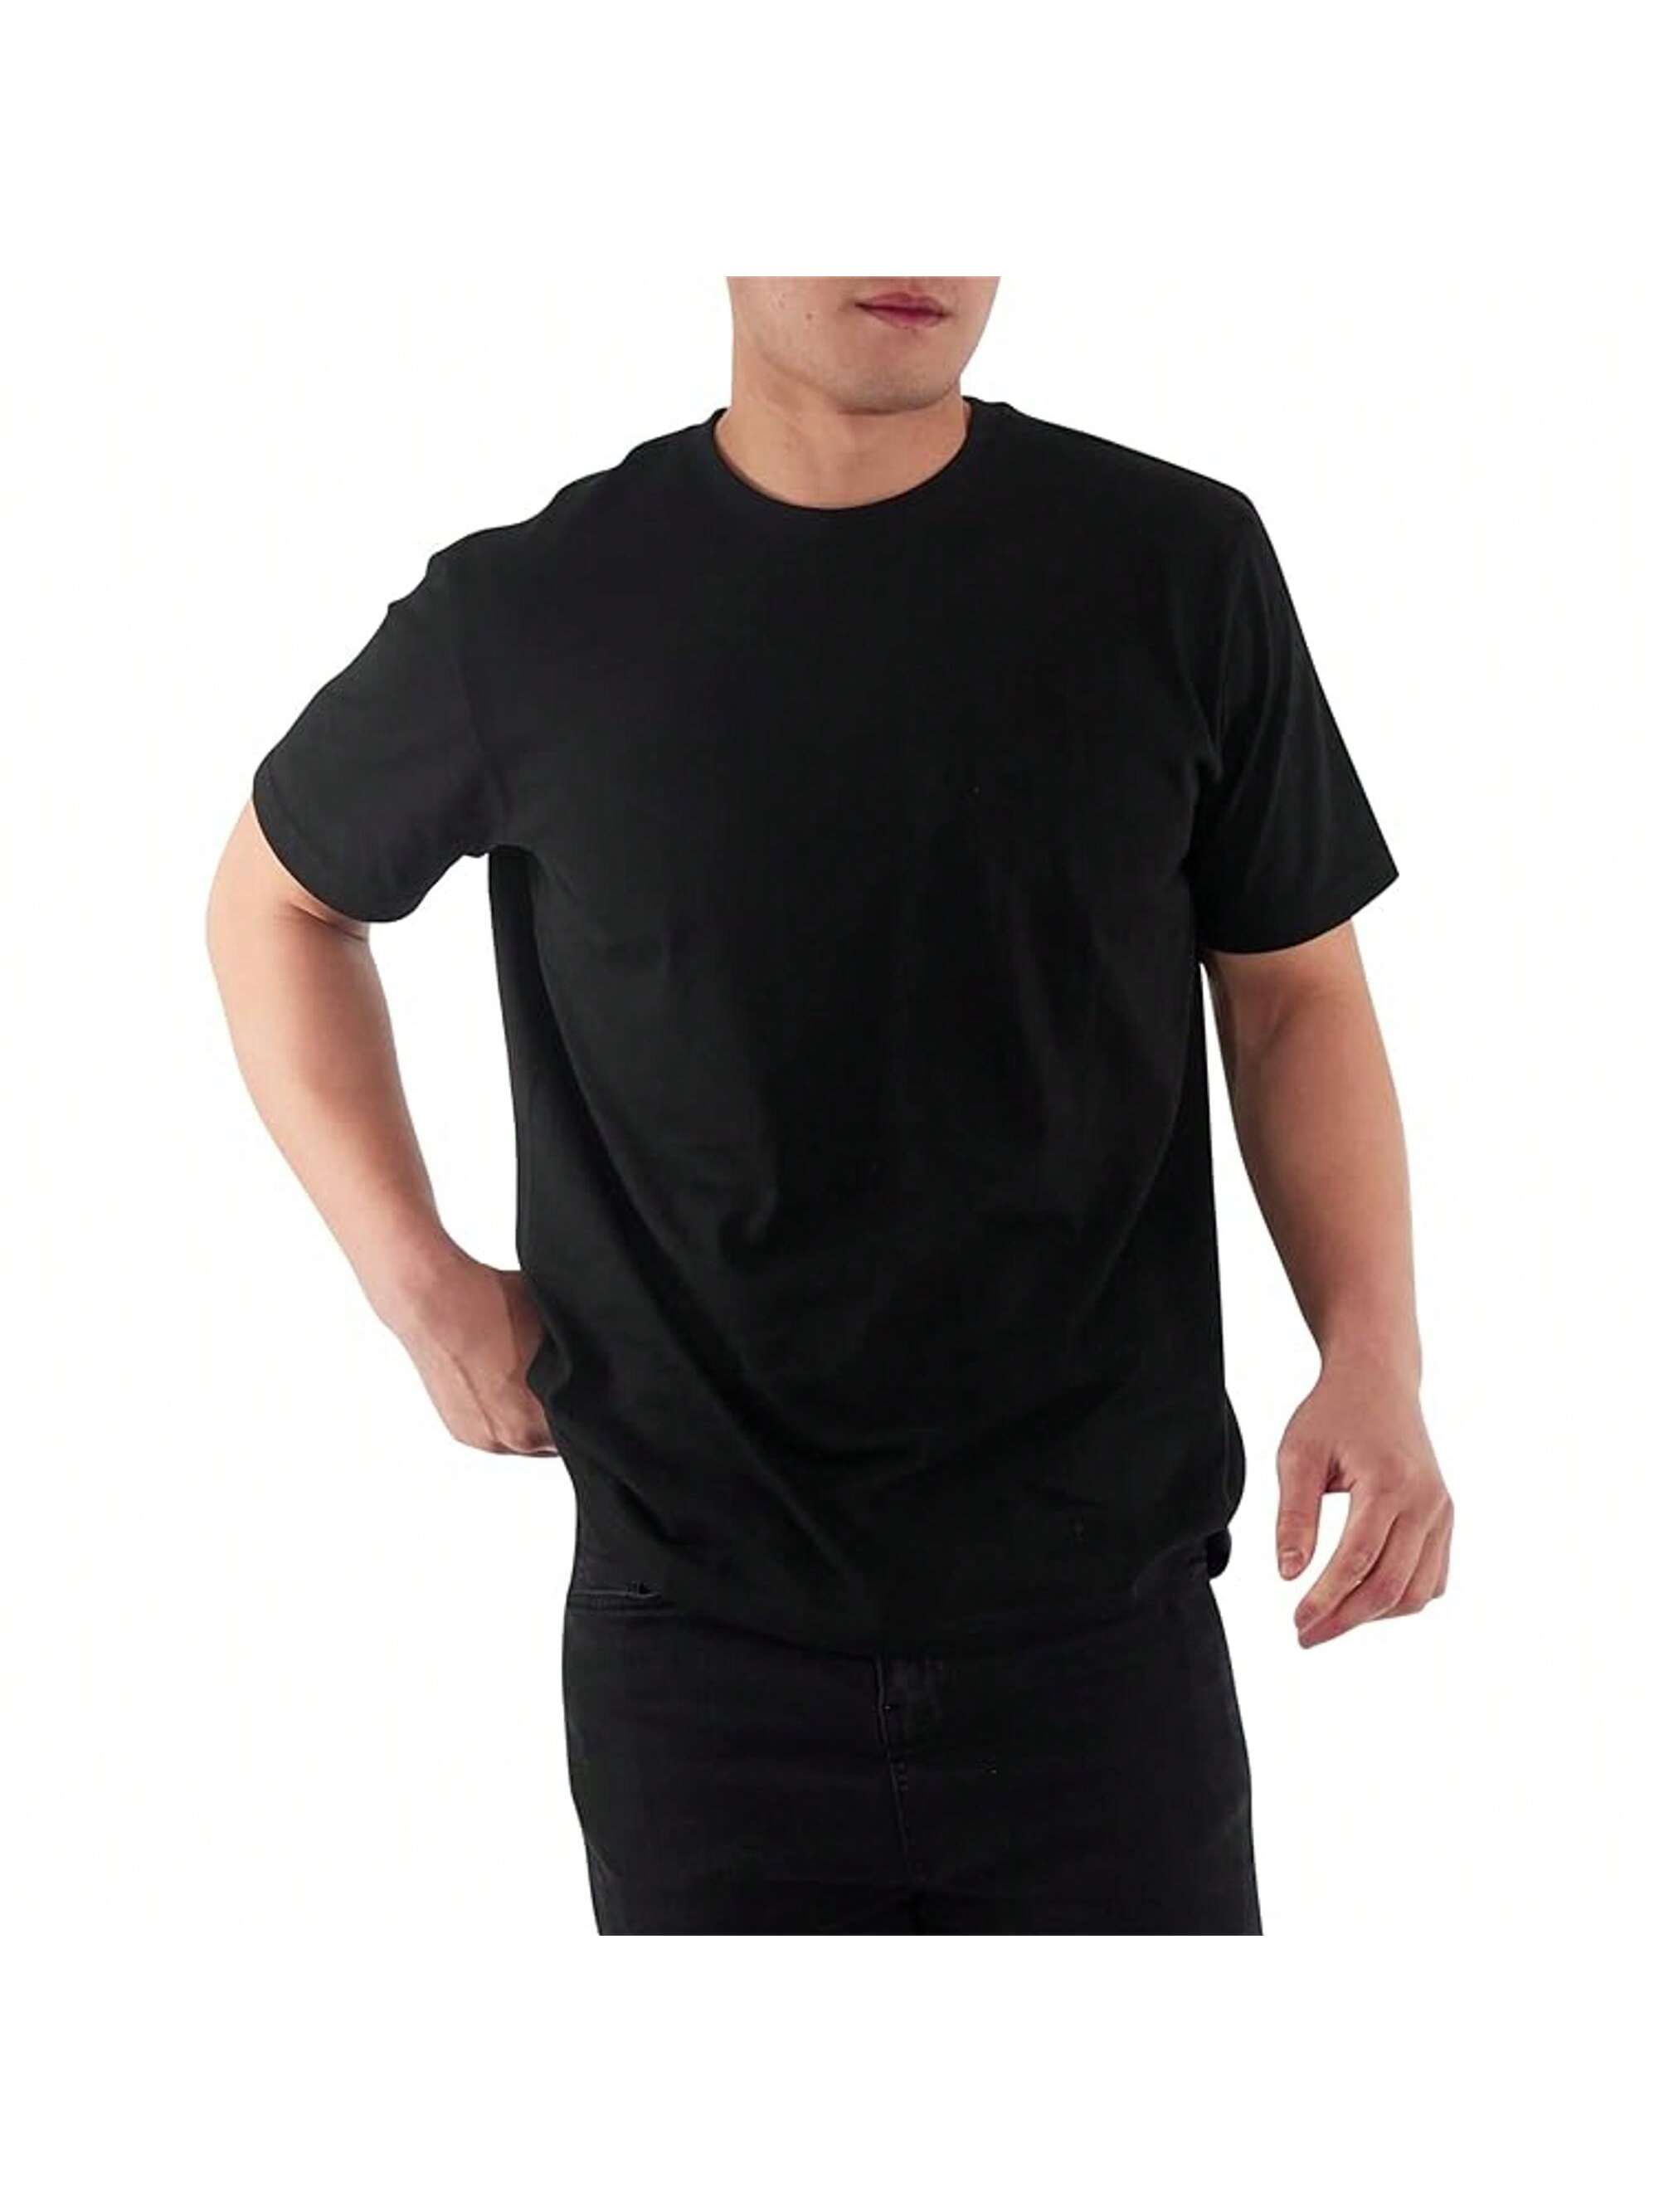 Мужская хлопковая футболка премиум-класса с круглым вырезом Rich Cotton� NVY-M, черный футболка laredoute футболка с круглым вырезом shark m черный